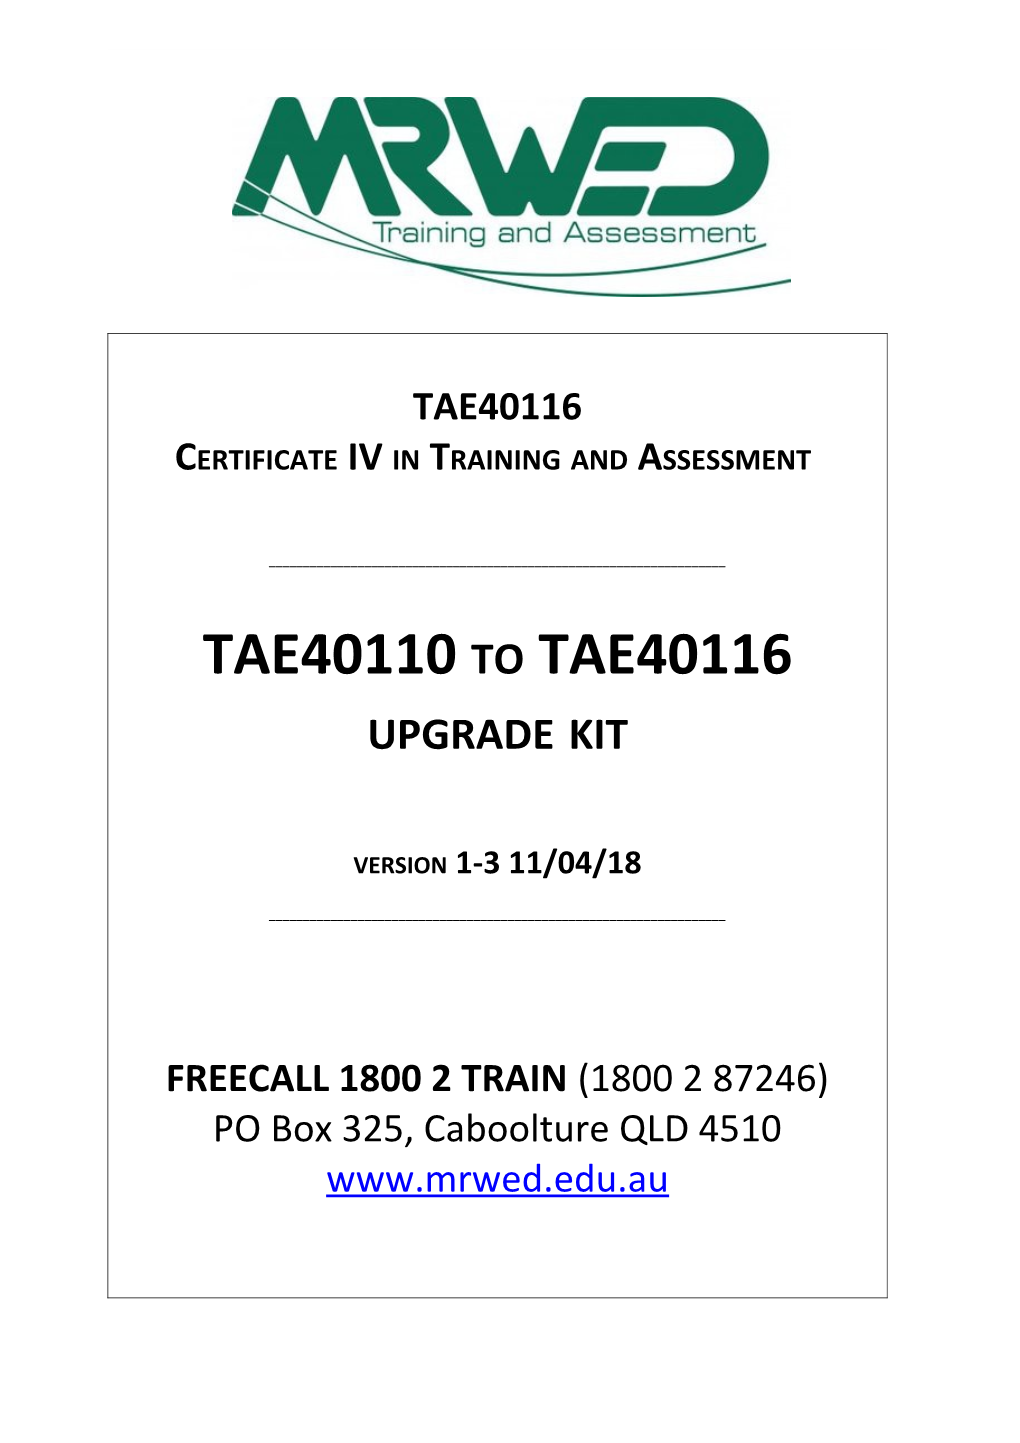 MRWED TAE40110 to TAE40116 Upgrade Kit (Version 1-3)